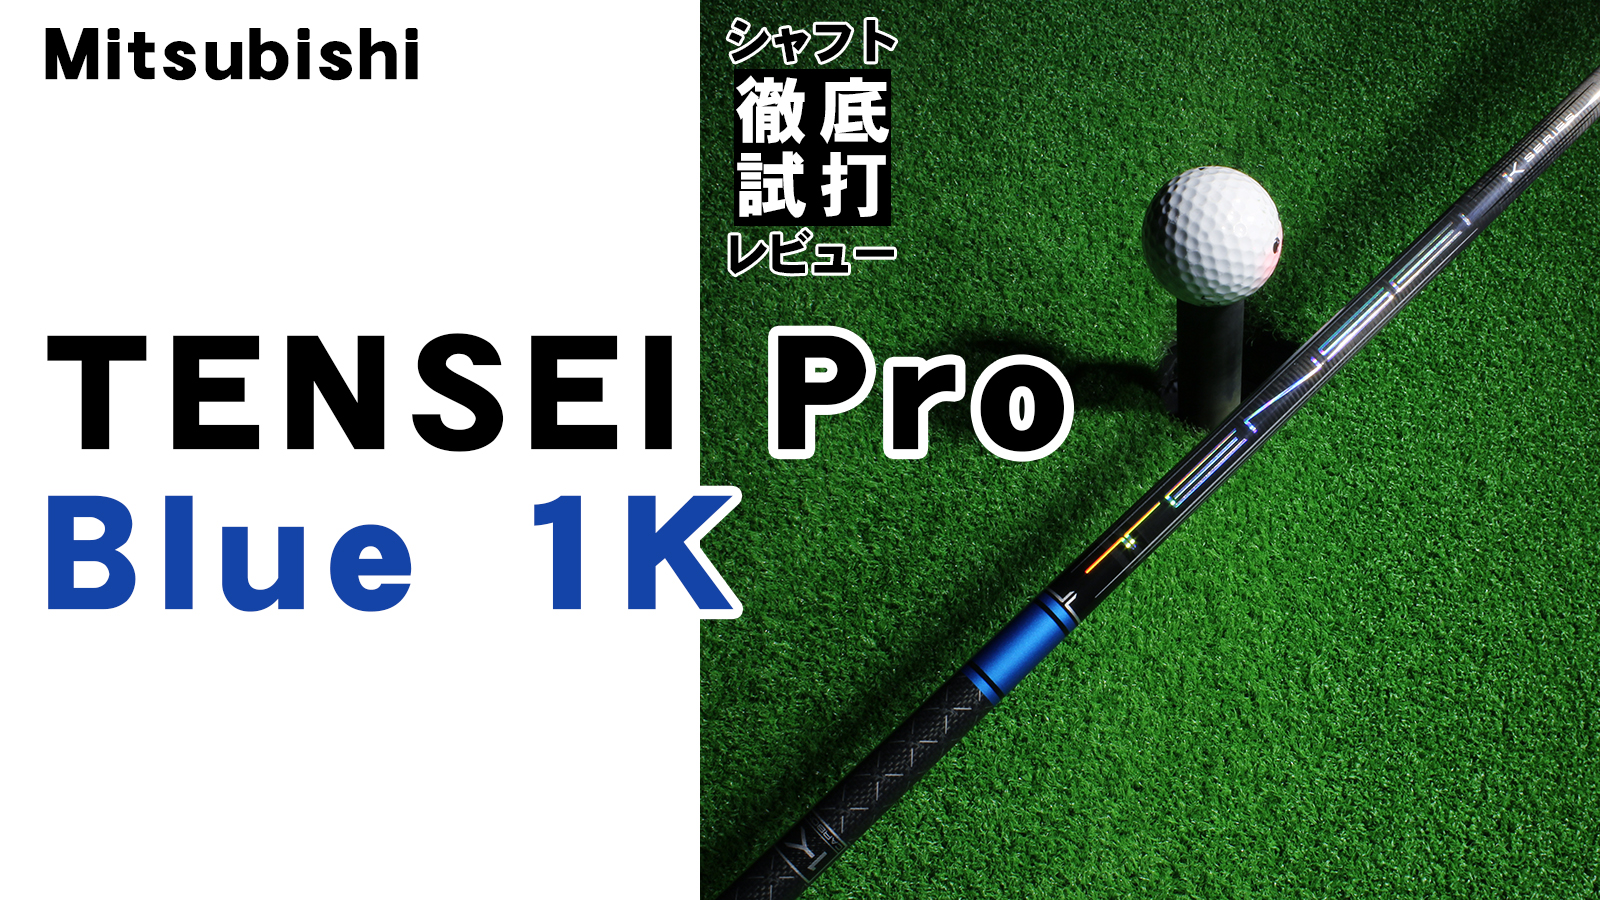 三菱 TENSEI PRO Blue 1K 60S シャフト テンセイブルー